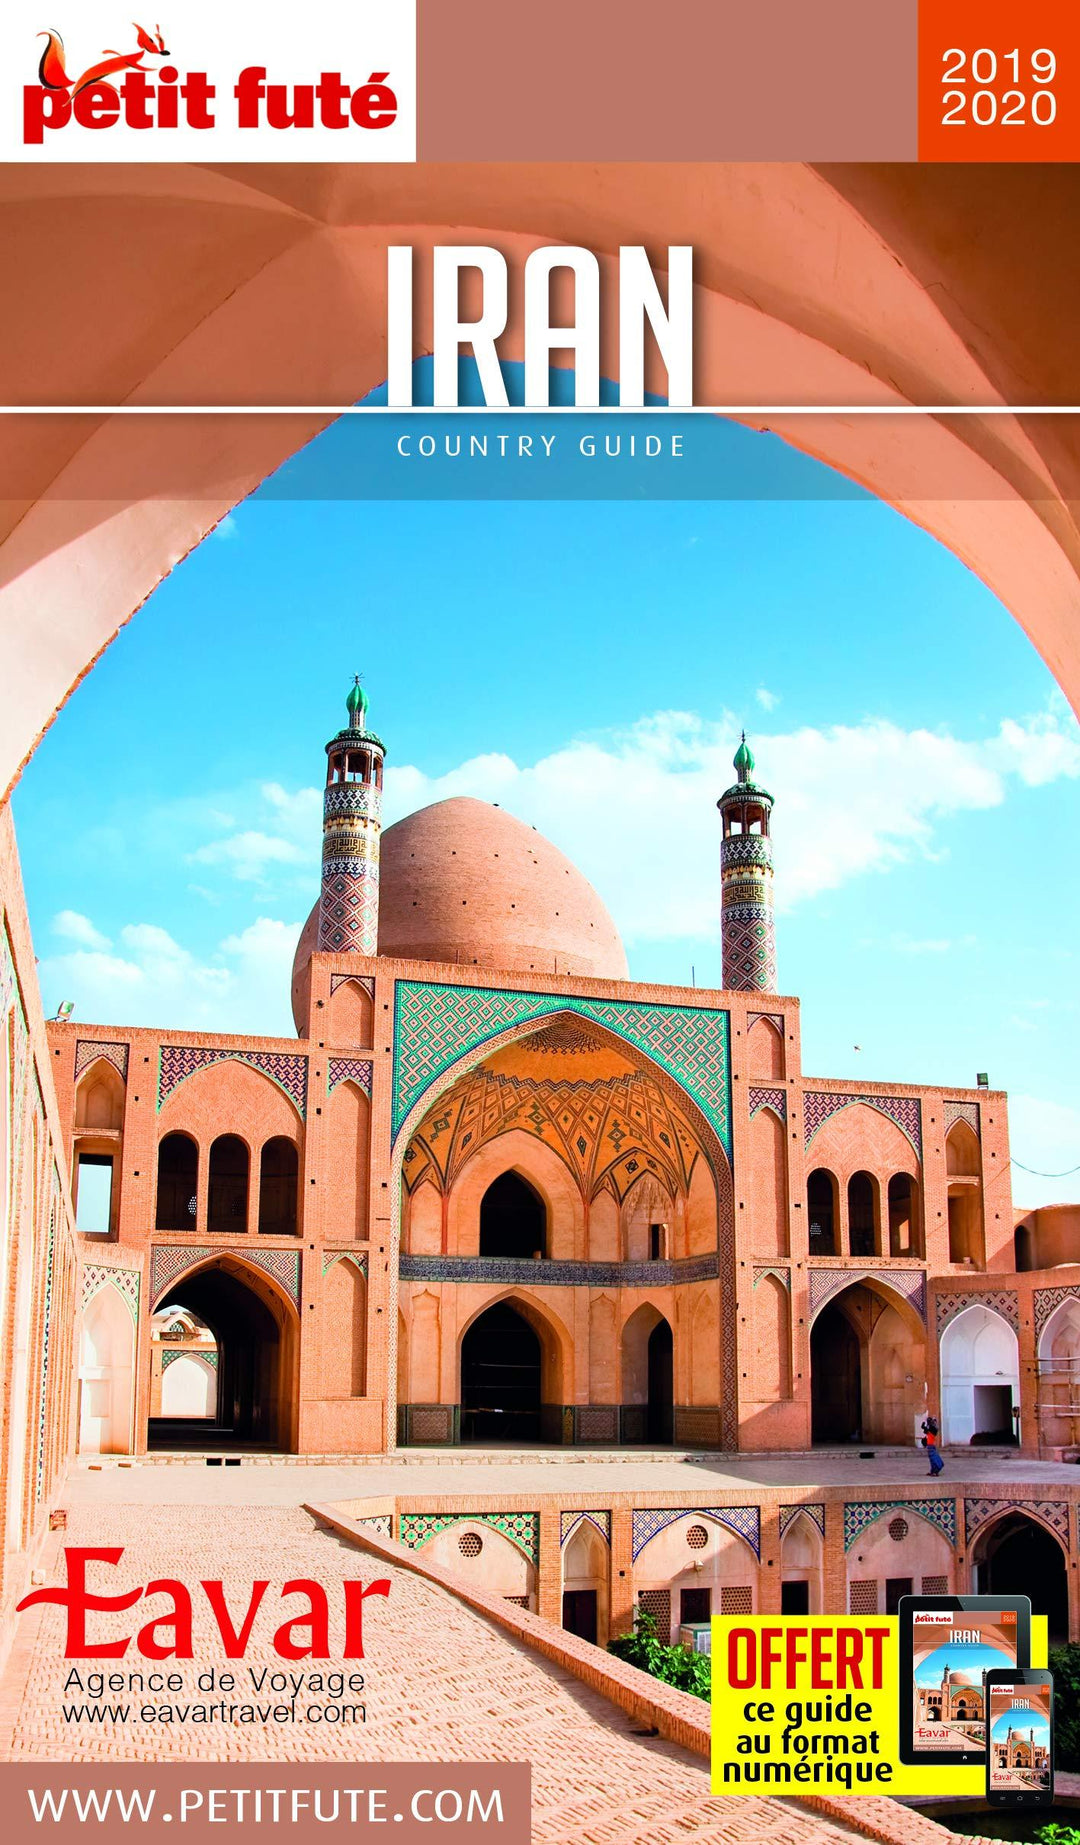 Guide de voyage - Iran 2019/20 | Petit Futé guide de voyage Petit Futé 